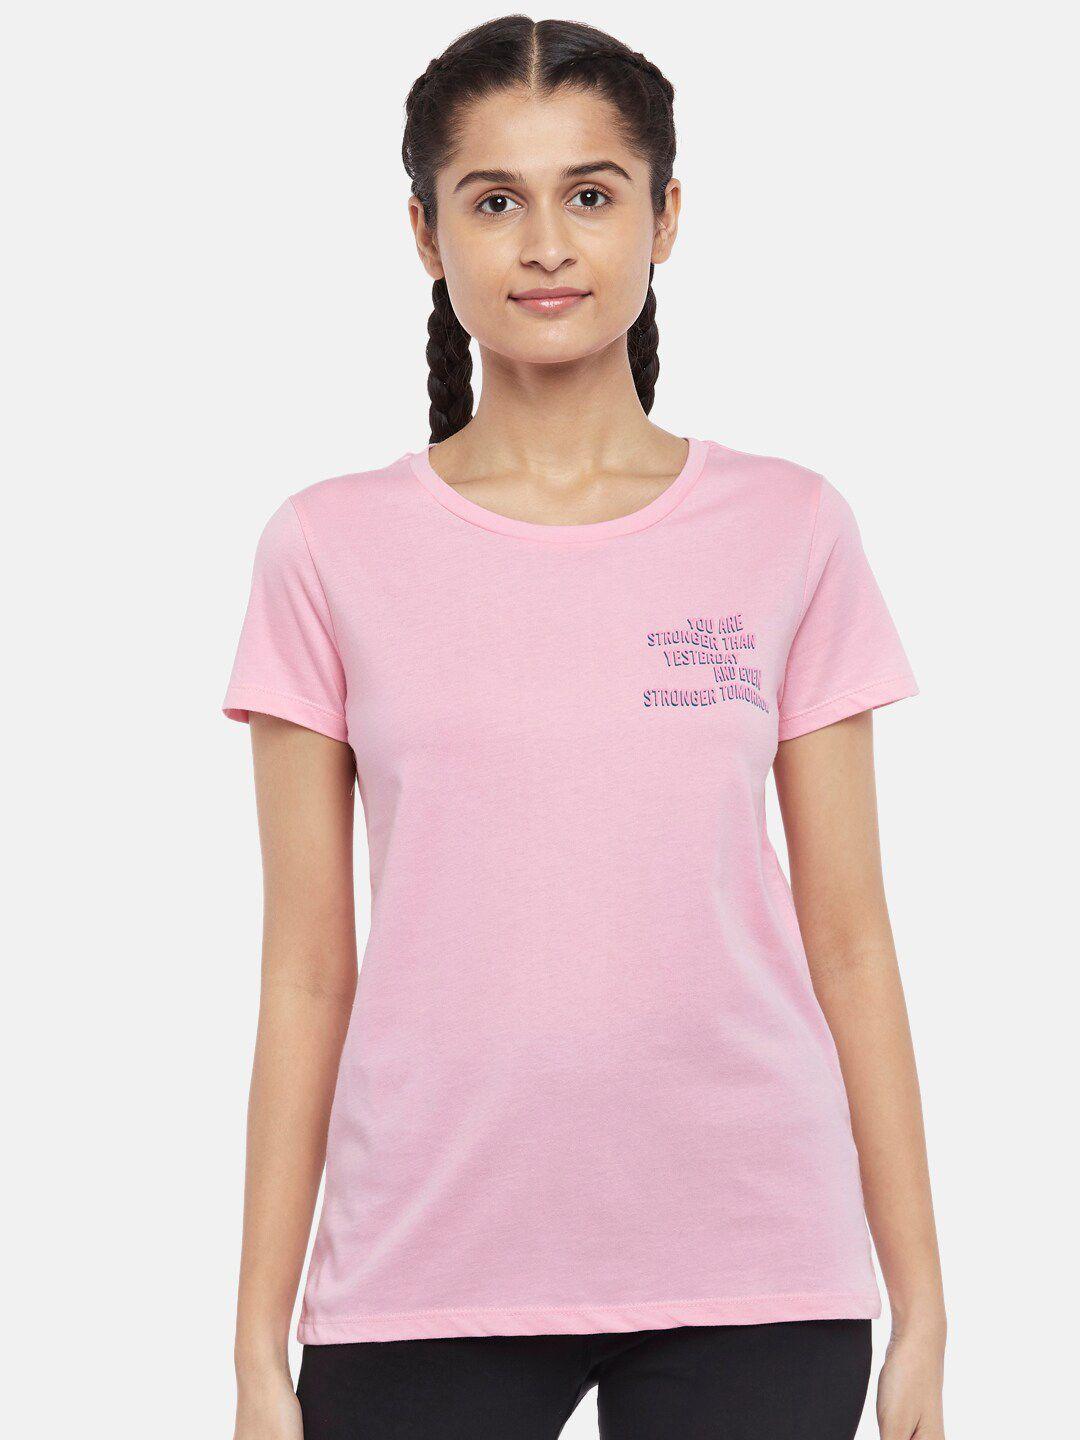 ajile-by-pantaloons-women-pink-running-cotton-t-shirt